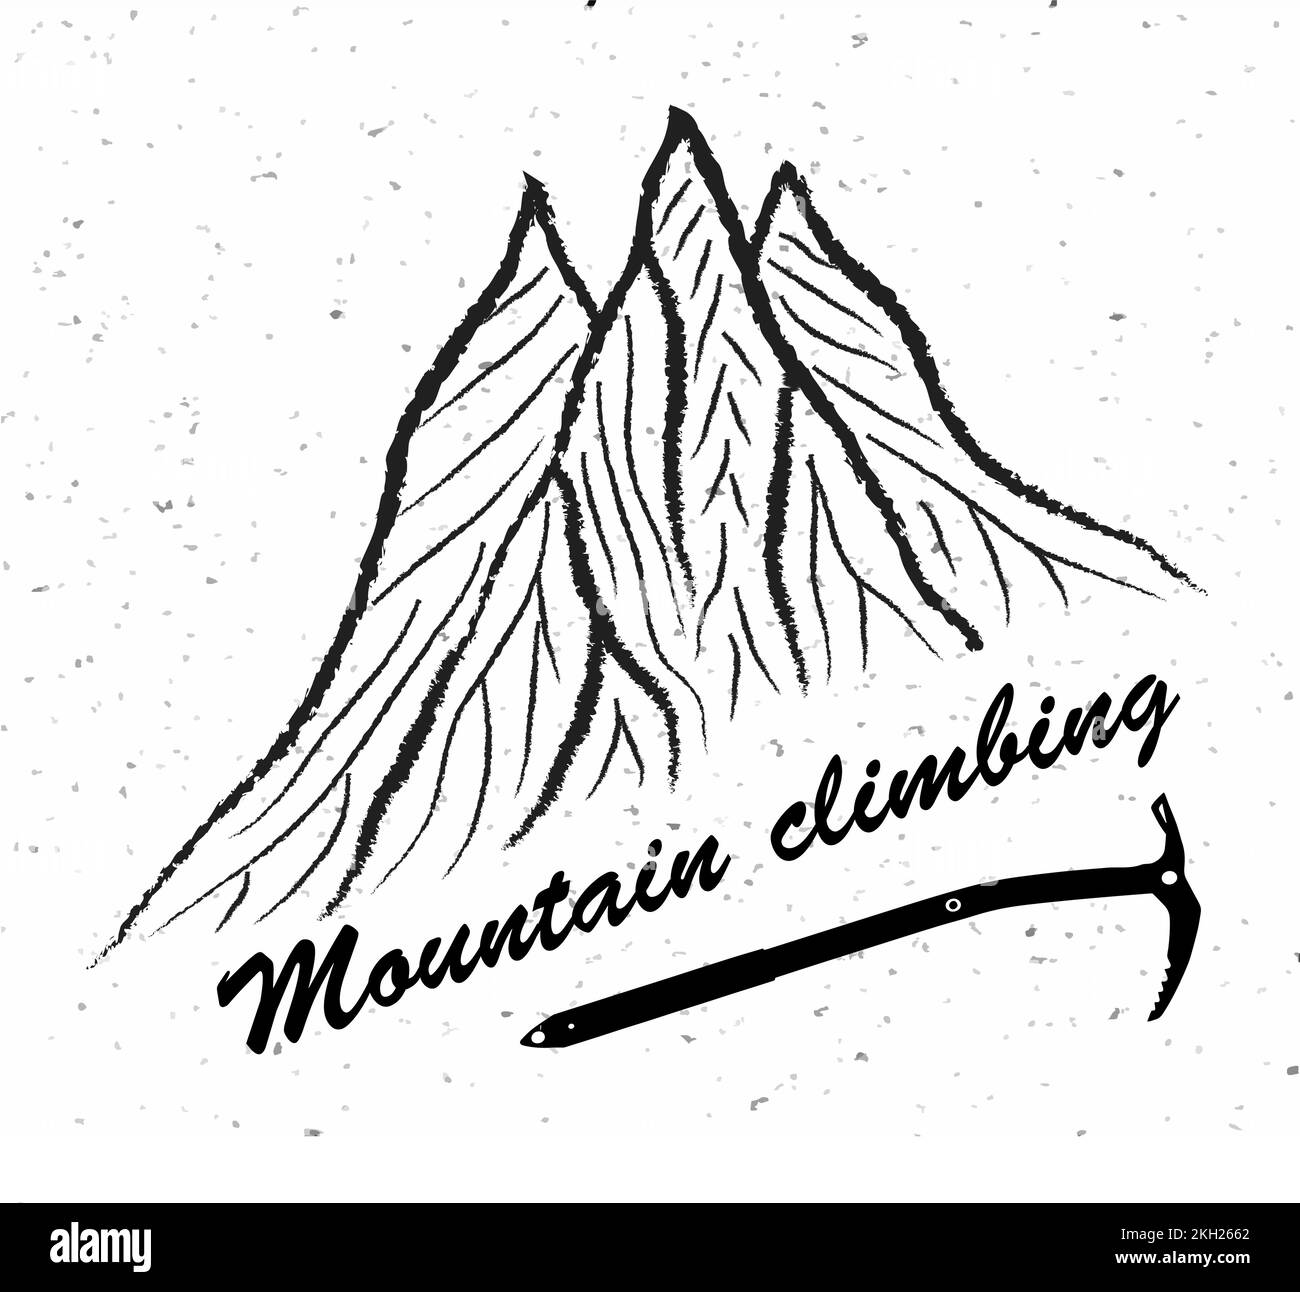 Montagnes et hache glacée avec texte escalade de montagne, logo d'illustration vectorielle, noir et blanc Illustration de Vecteur